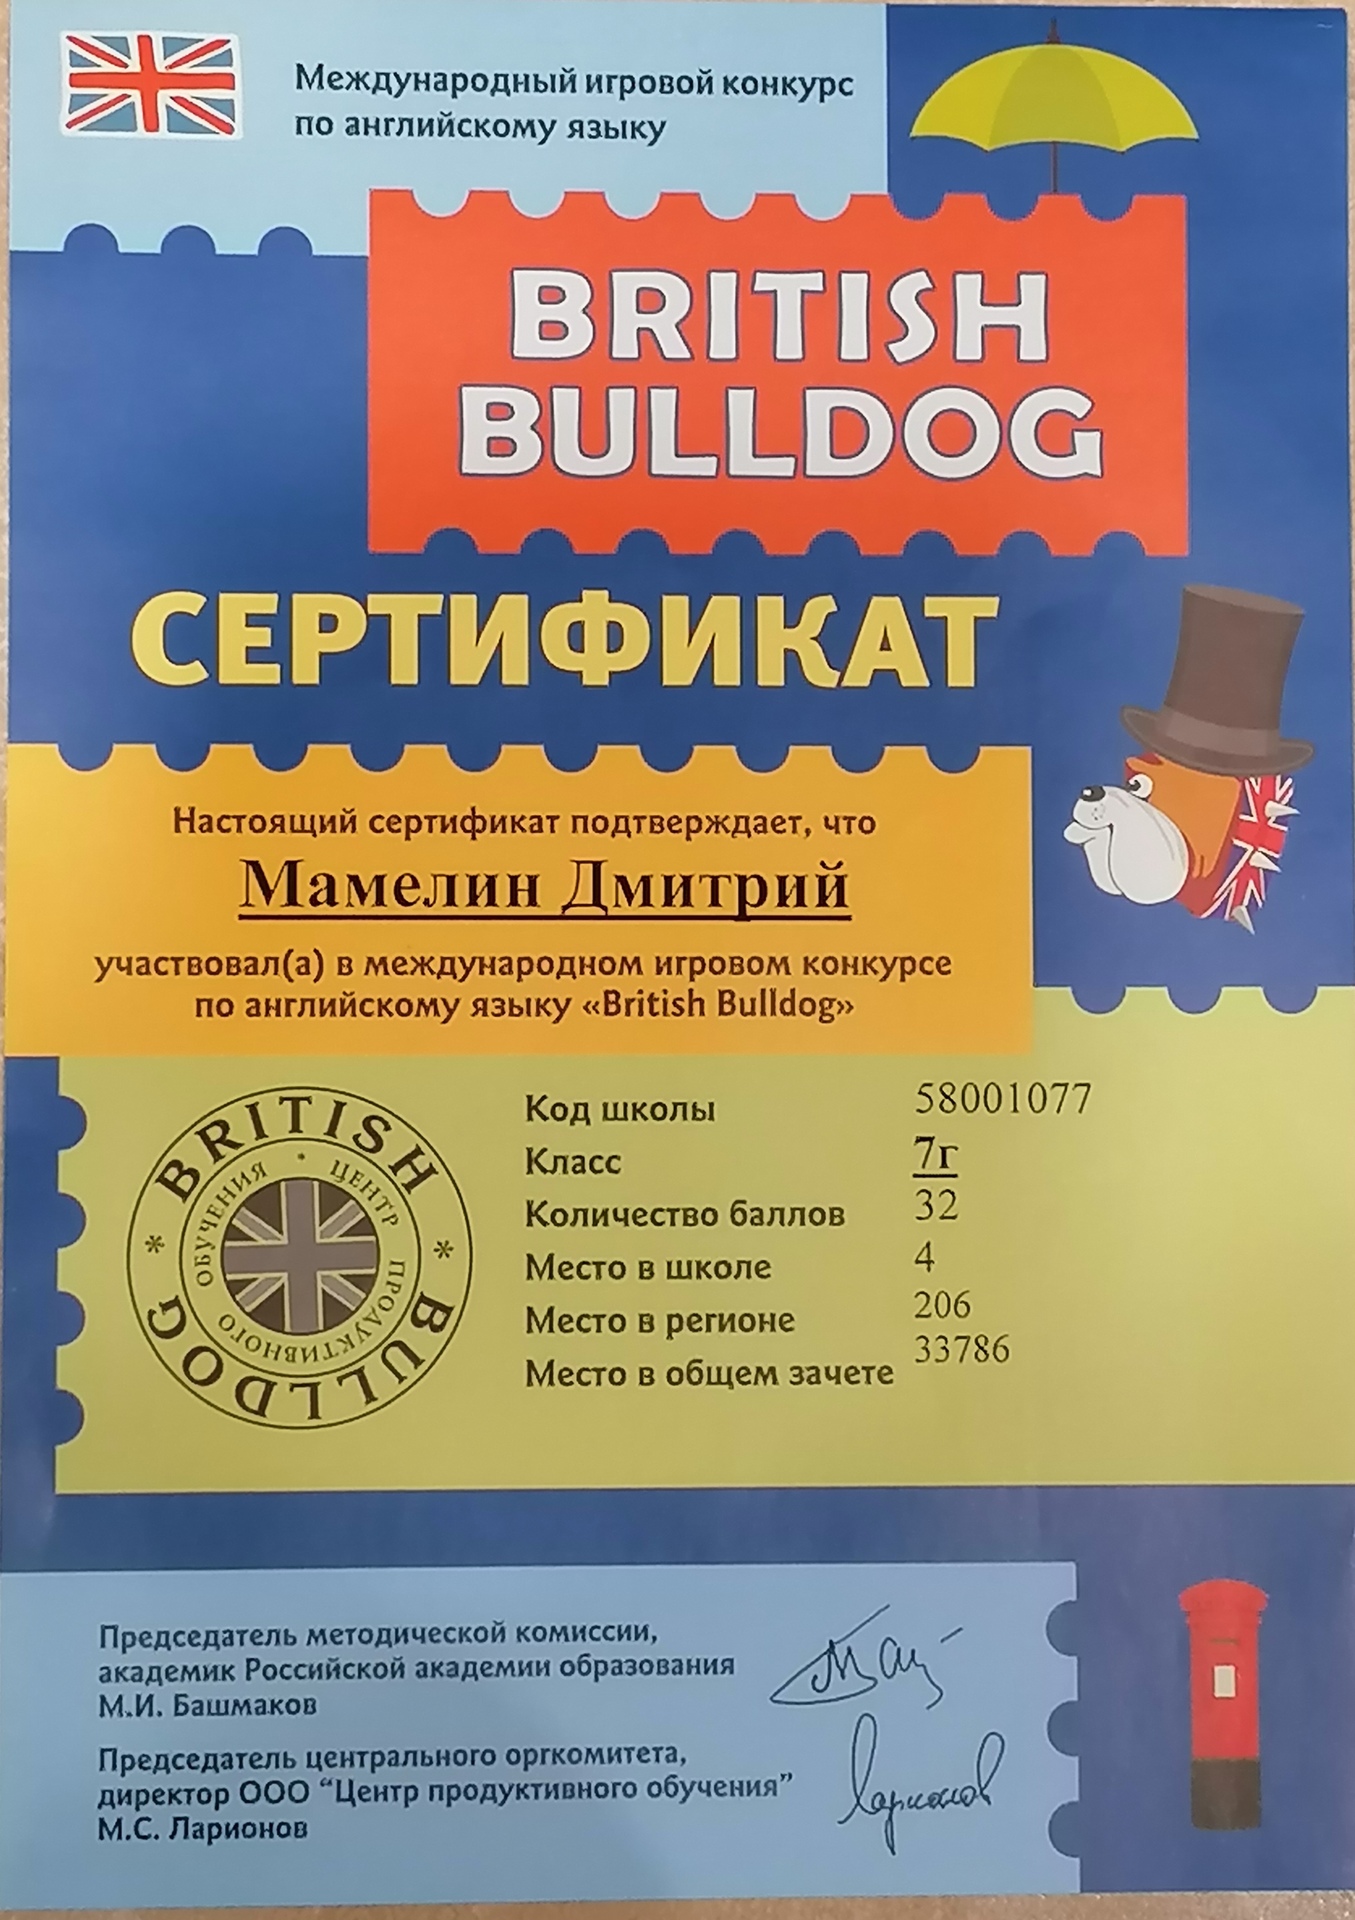 Бульдог конкурс по английскому языку. British Bulldog сертификат. Международный/ игровой конкурс «британский бульдог».